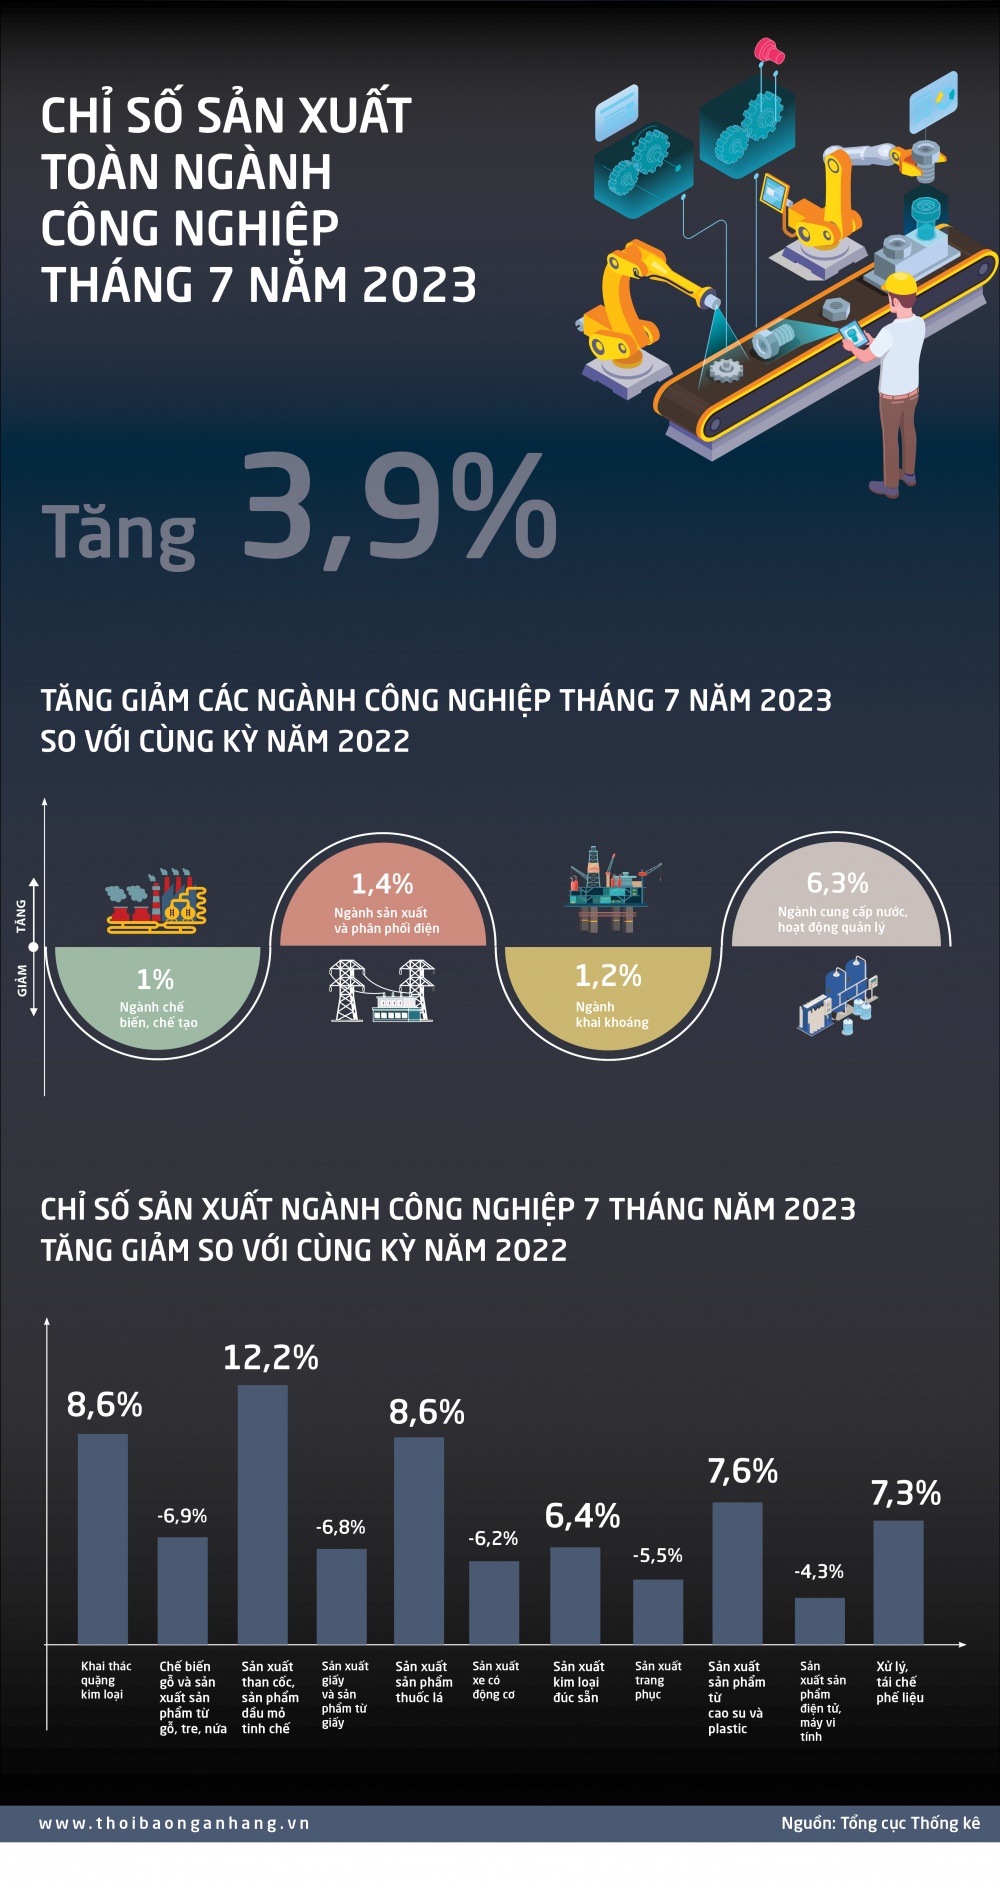 [Infographic] Chỉ số sản xuất công nghiệp tháng 7/2023